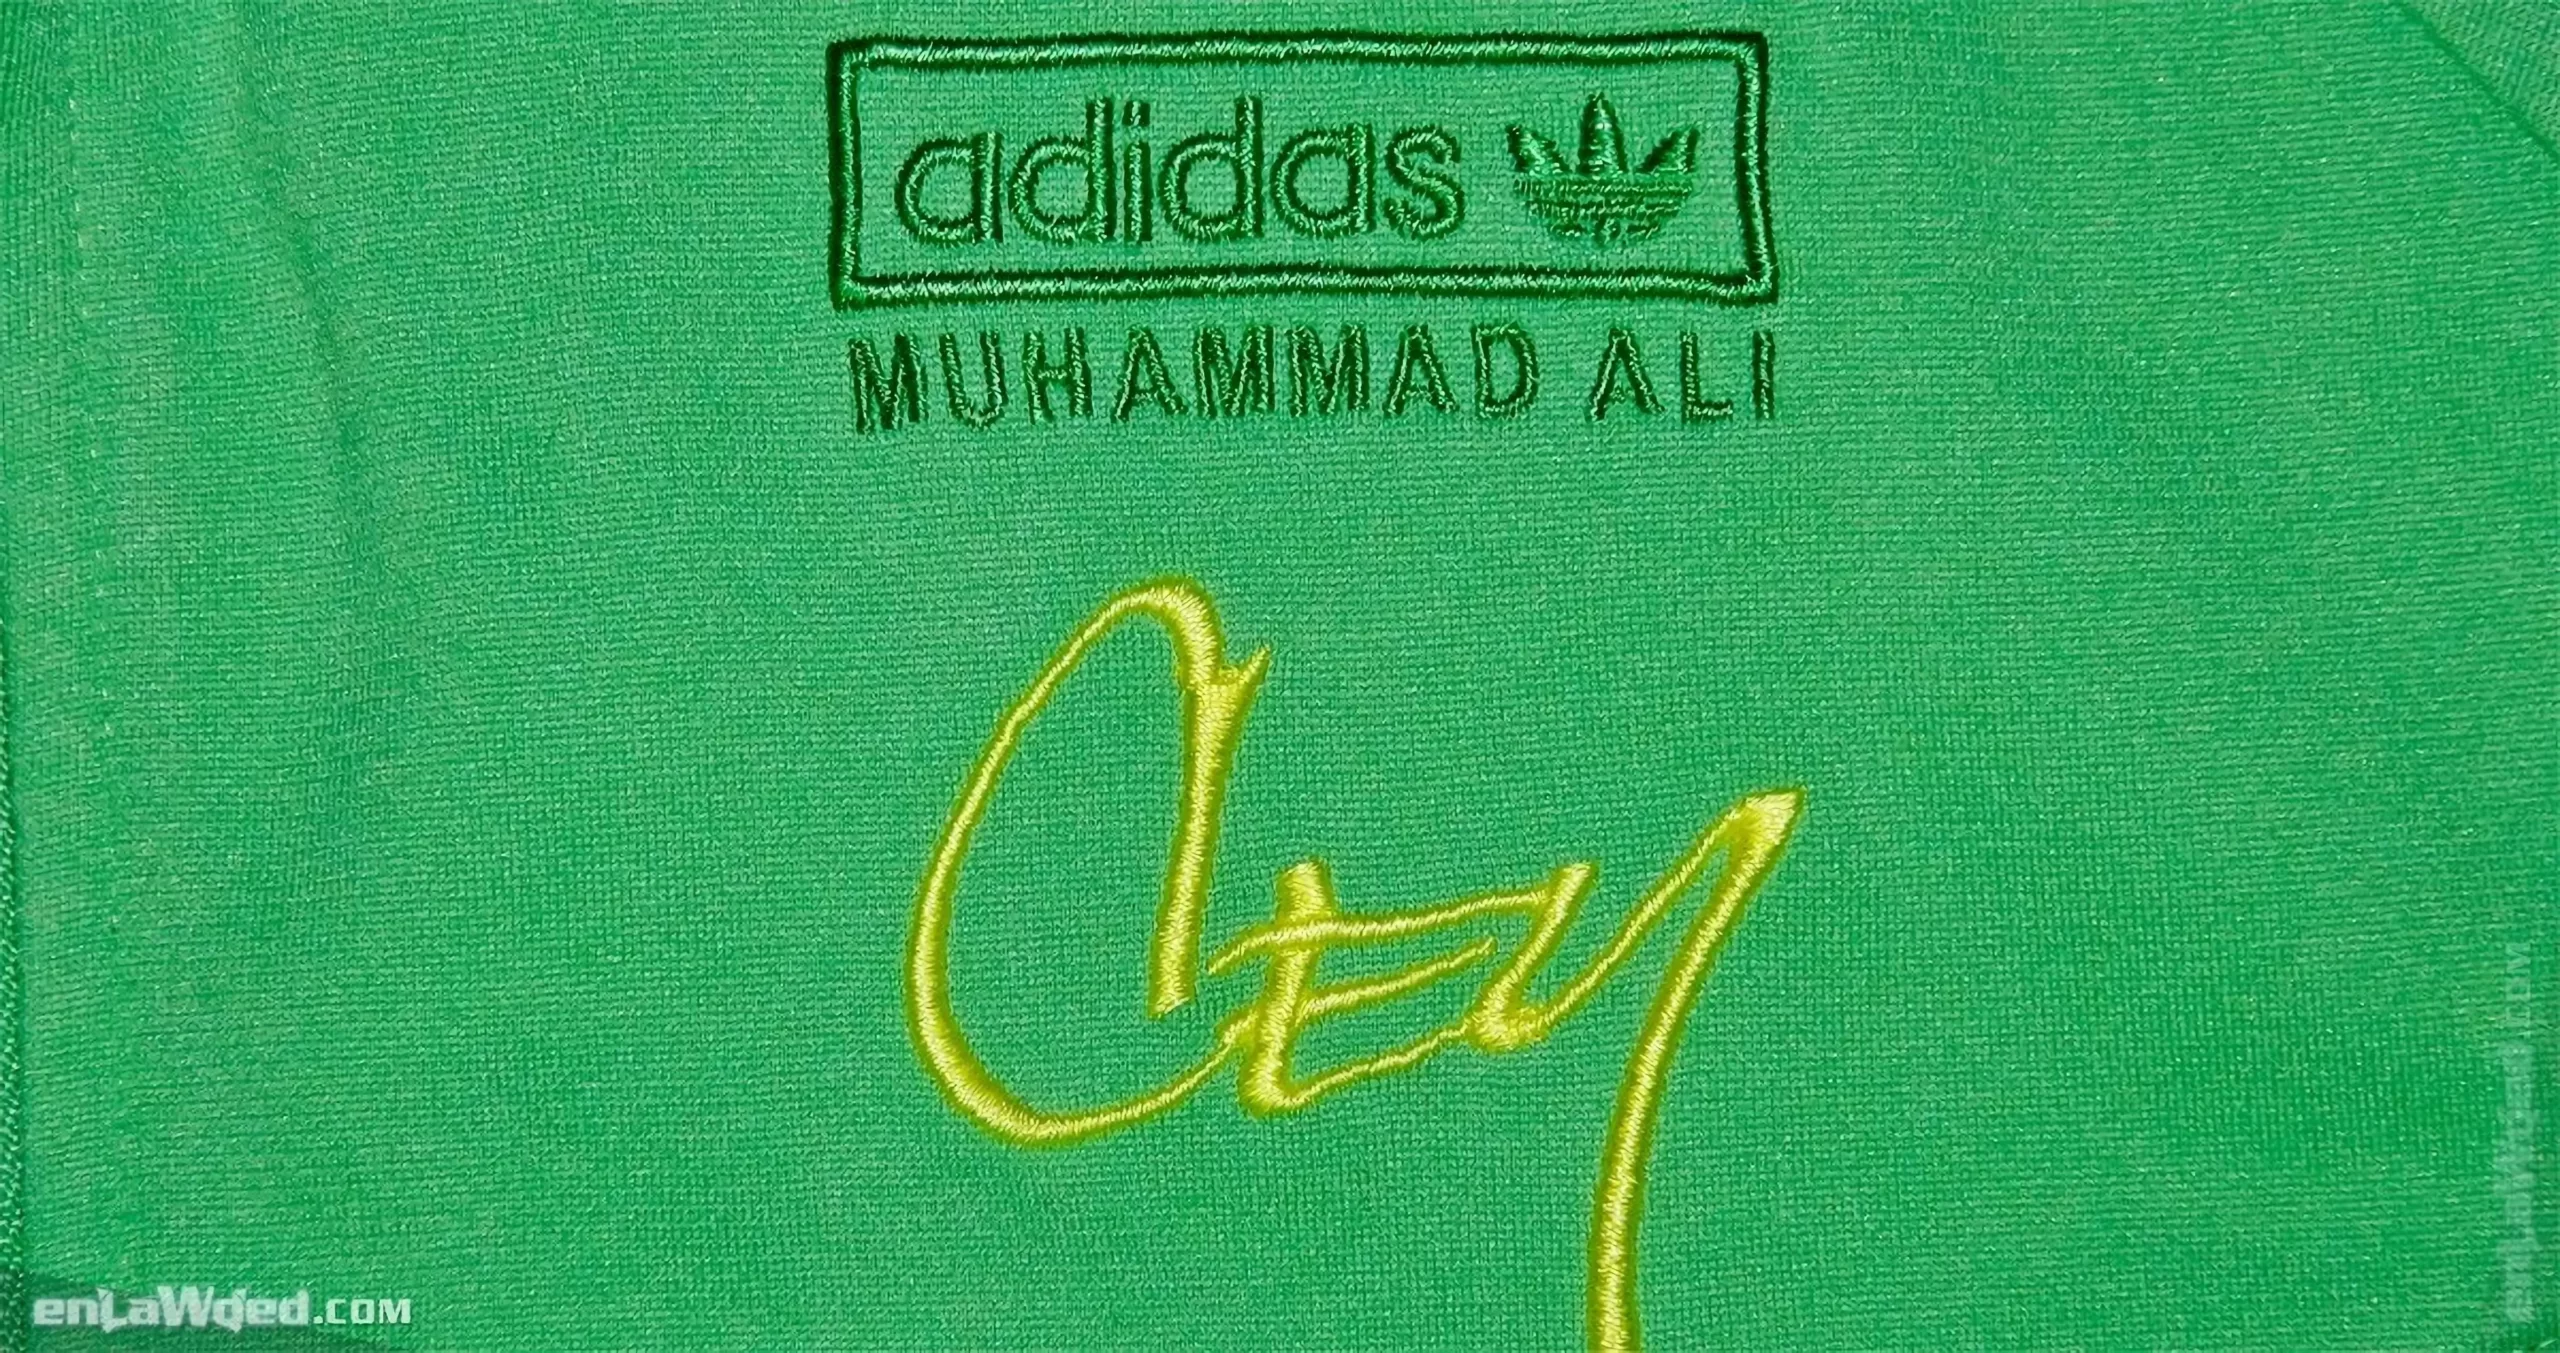 Men’s 2007 Muhammad Ali Confidence TT by Adidas: Launching (EnLawded.com file #lmc4ruf3kev7gw5phnj)